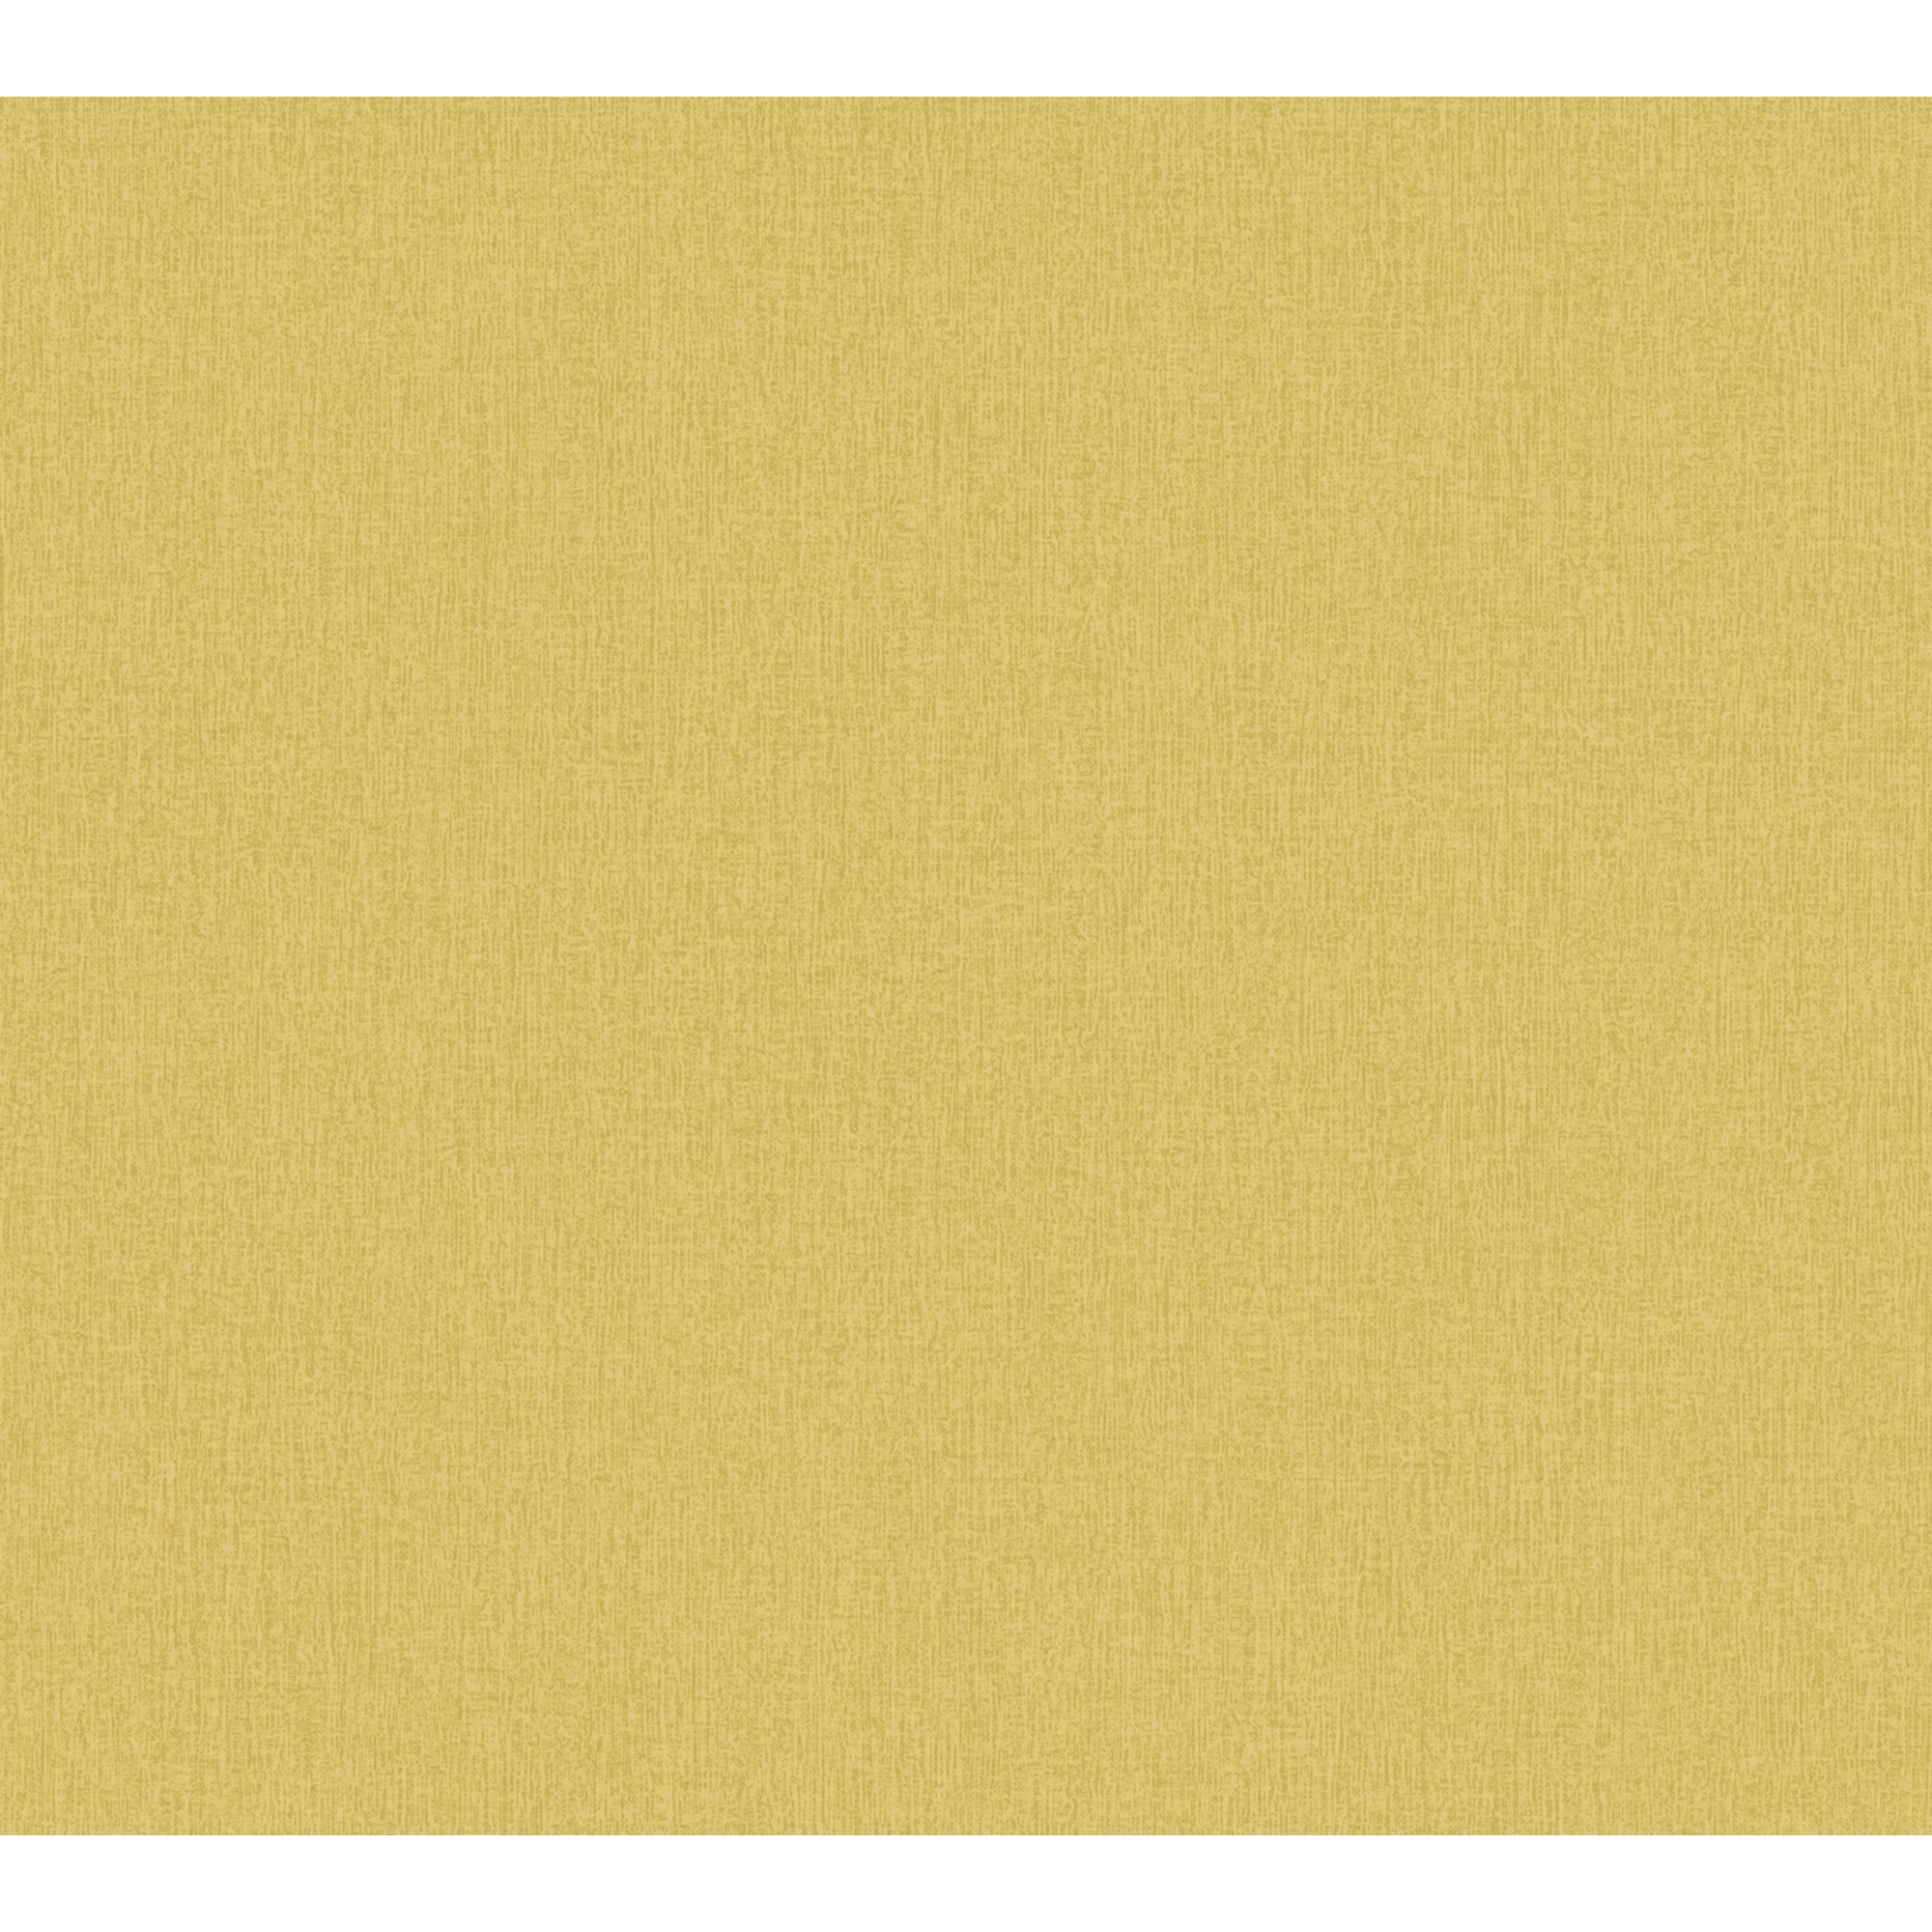 Vliestapete 'Daniel Hechter 6' Uni gelb 53 x 1005 cm + product picture